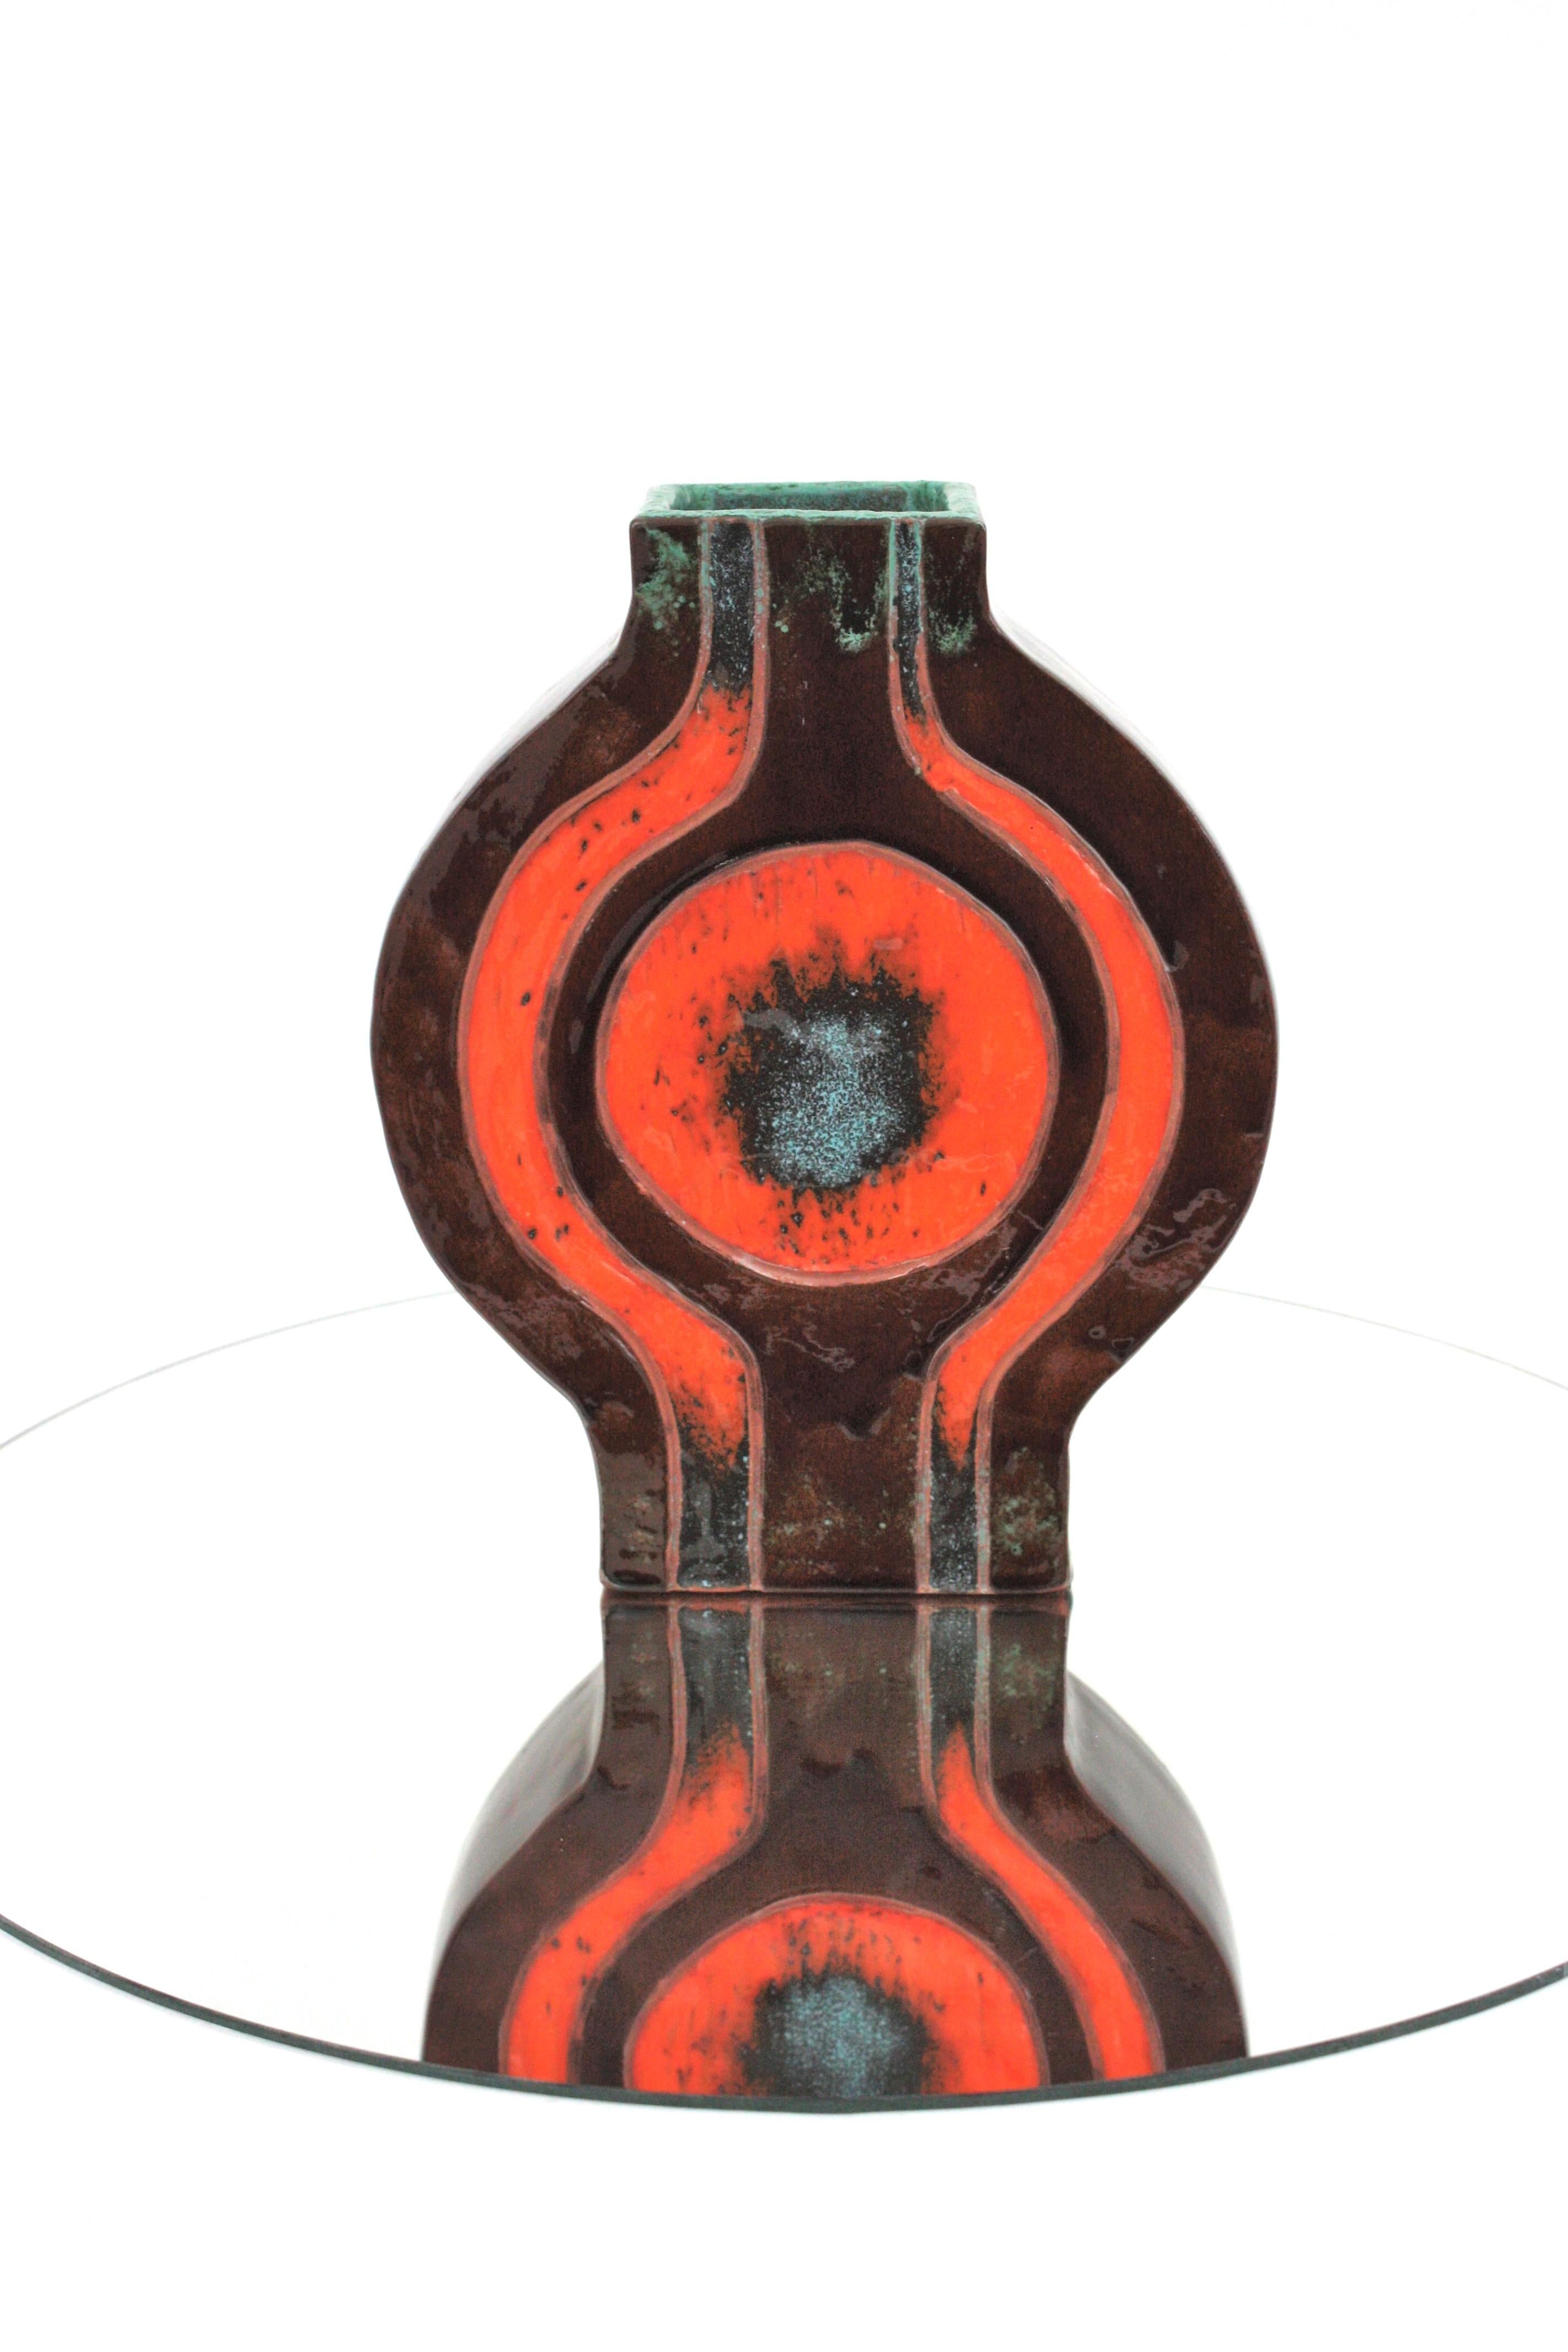 1970s Spanish Orange Brown Glazed Ceramic Vase For Sale 3